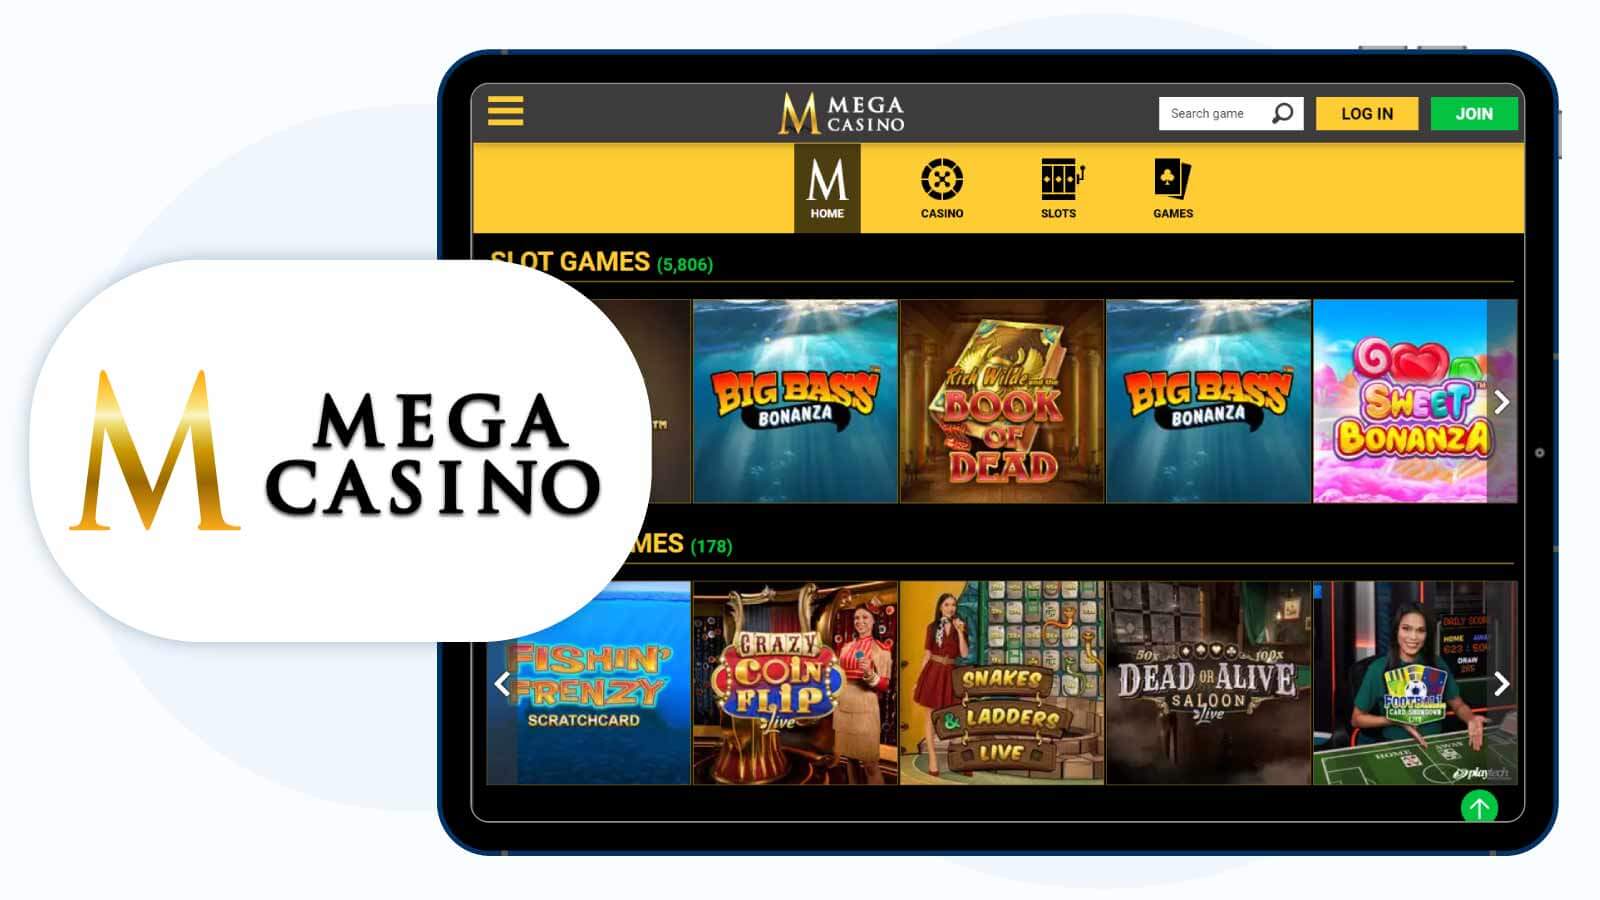 Lottomart Casino – Best £10 Deposit Bonus for Table Games